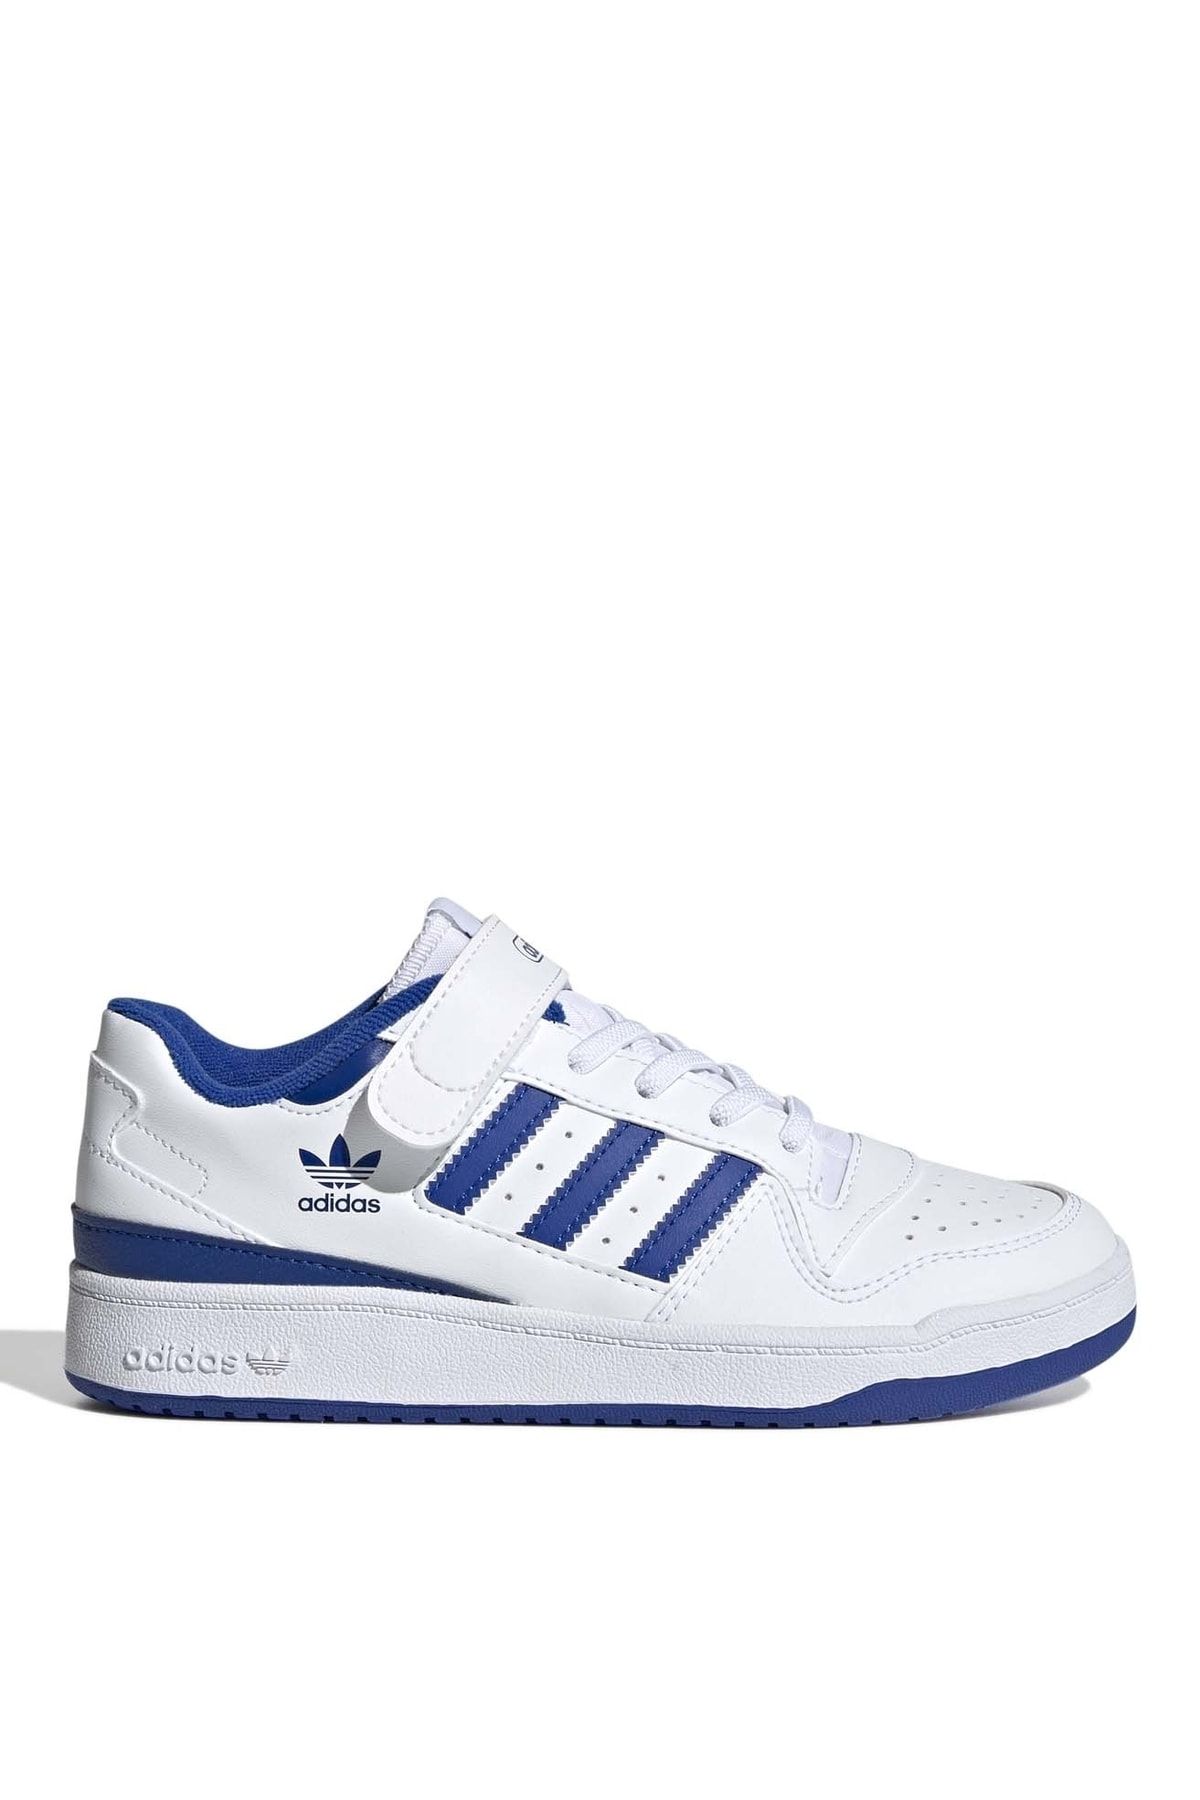 adidas Beyaz - Mavi Erkek Çocuk Yürüyüş Ayakkabısı Fy7978 Forum Low C